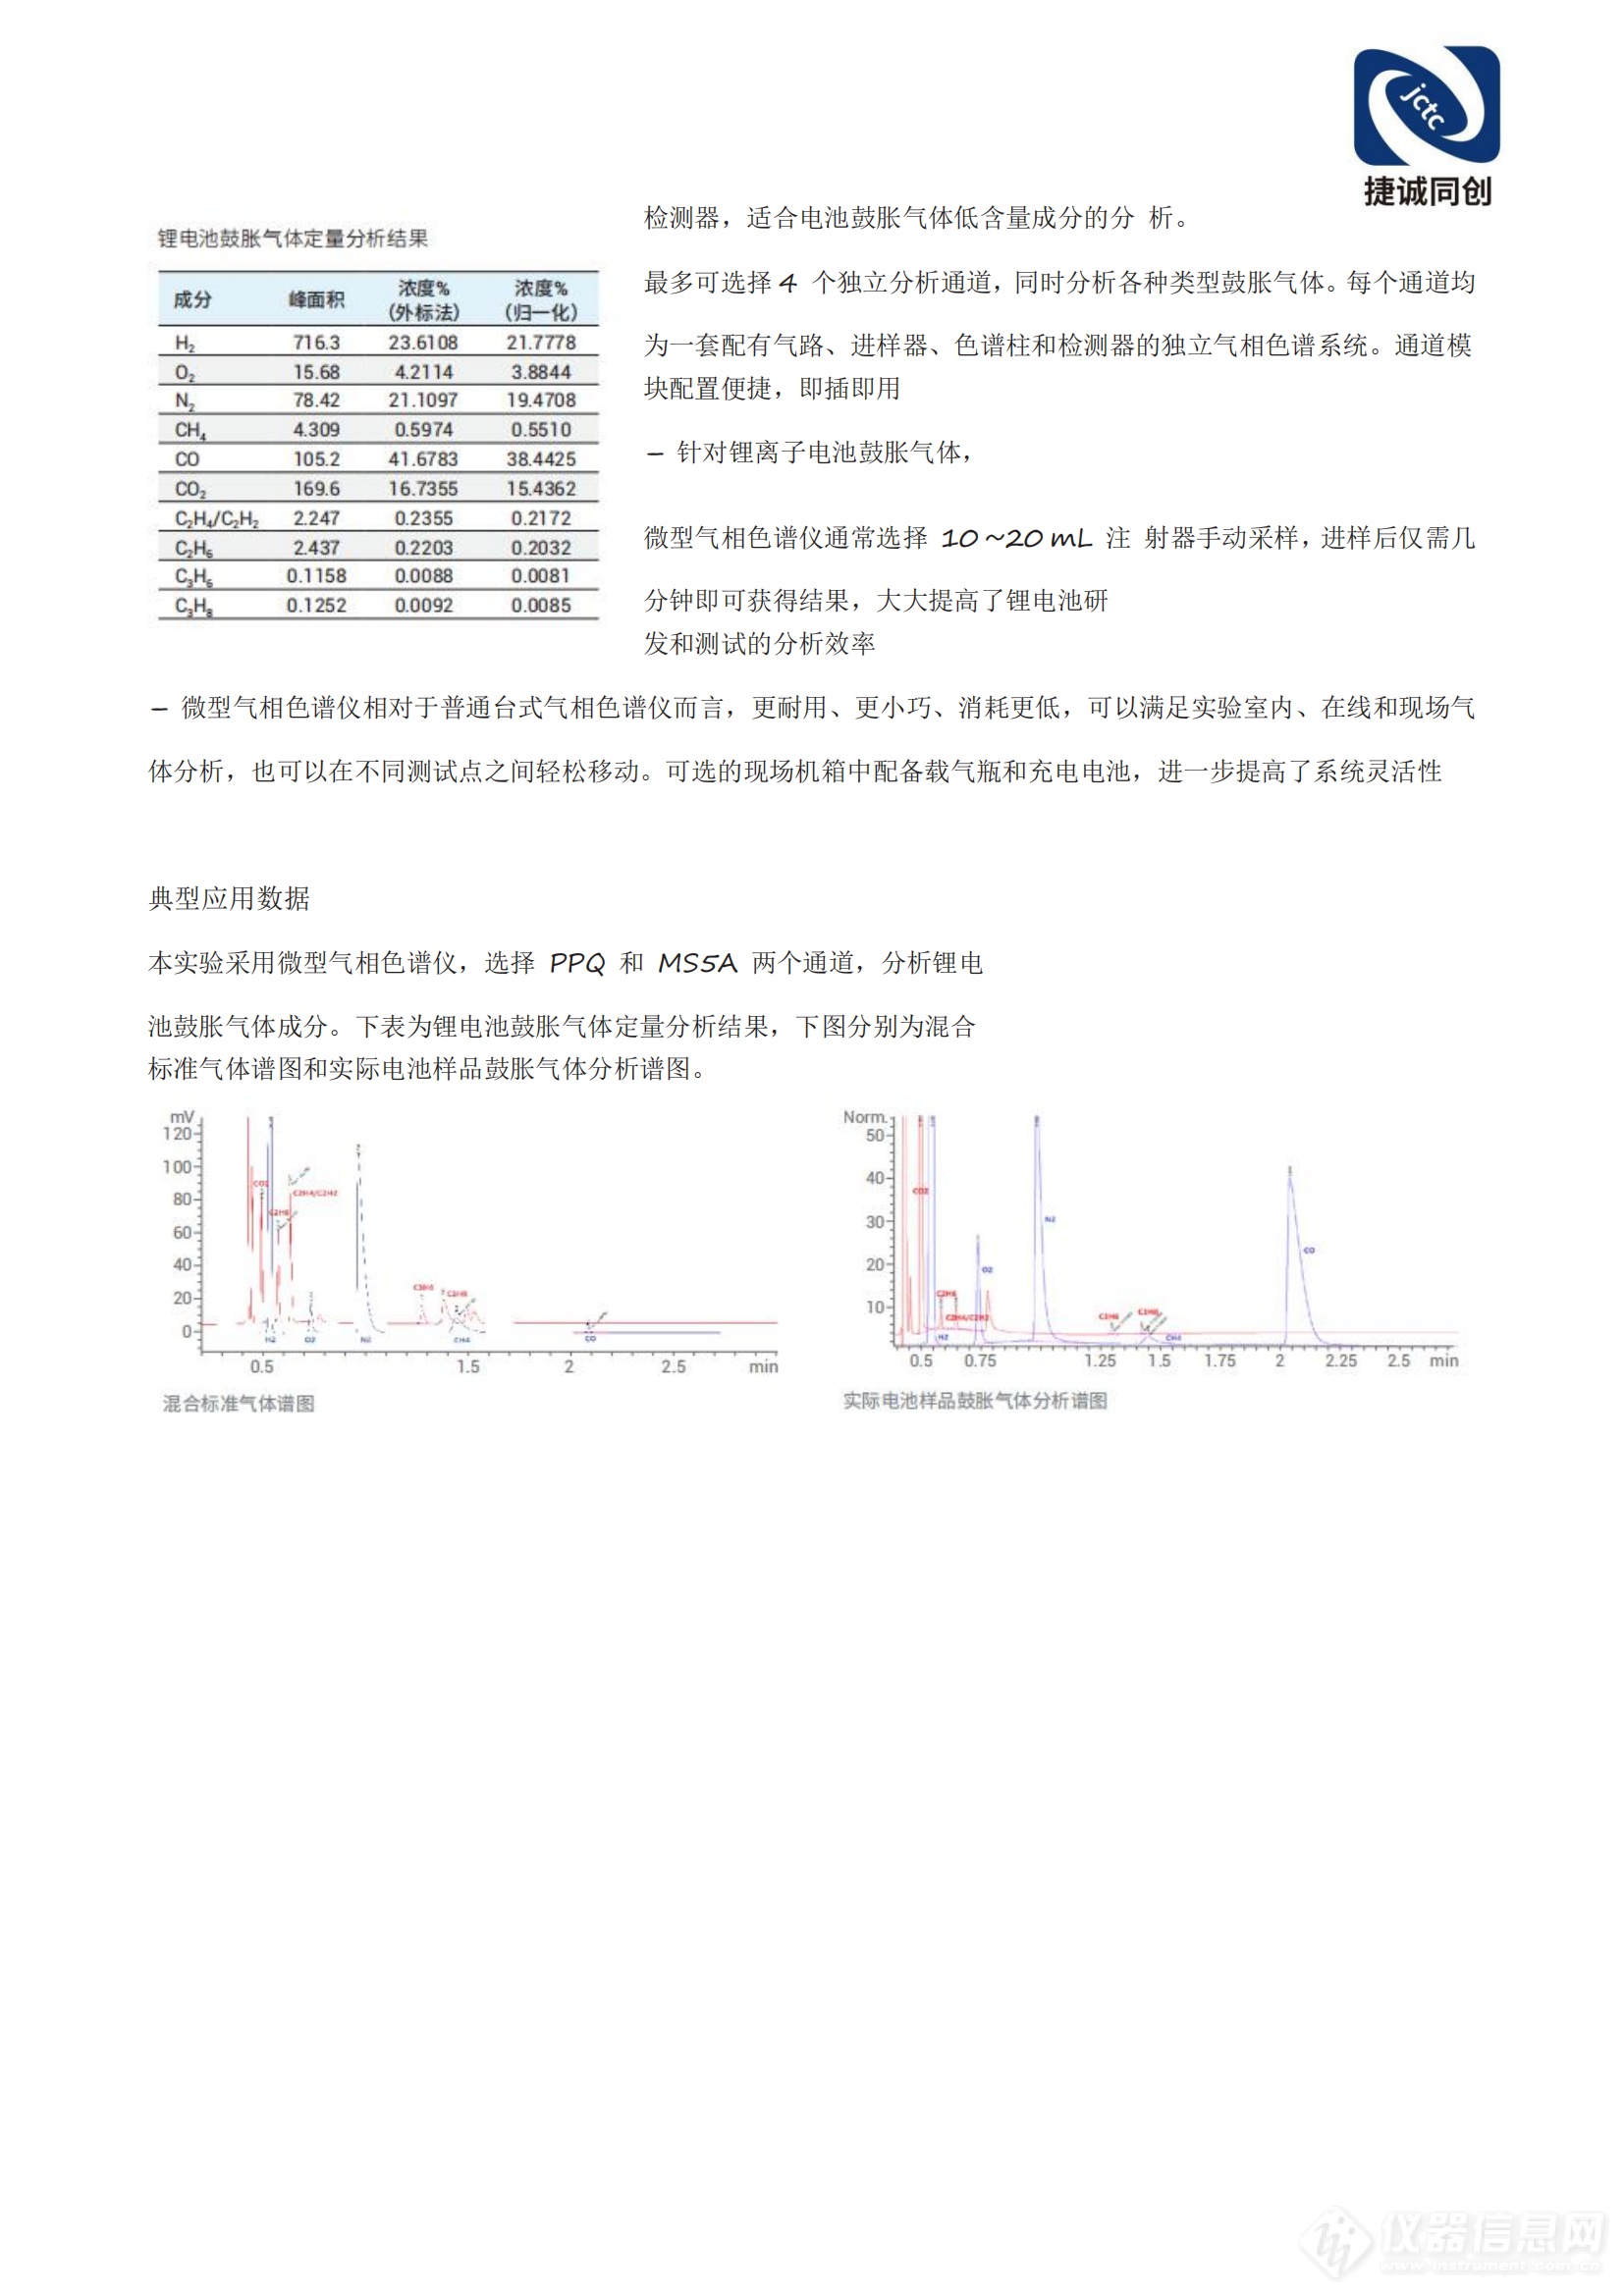 北京捷诚同创科技有限公司锂电池解决方案(2)_07.png